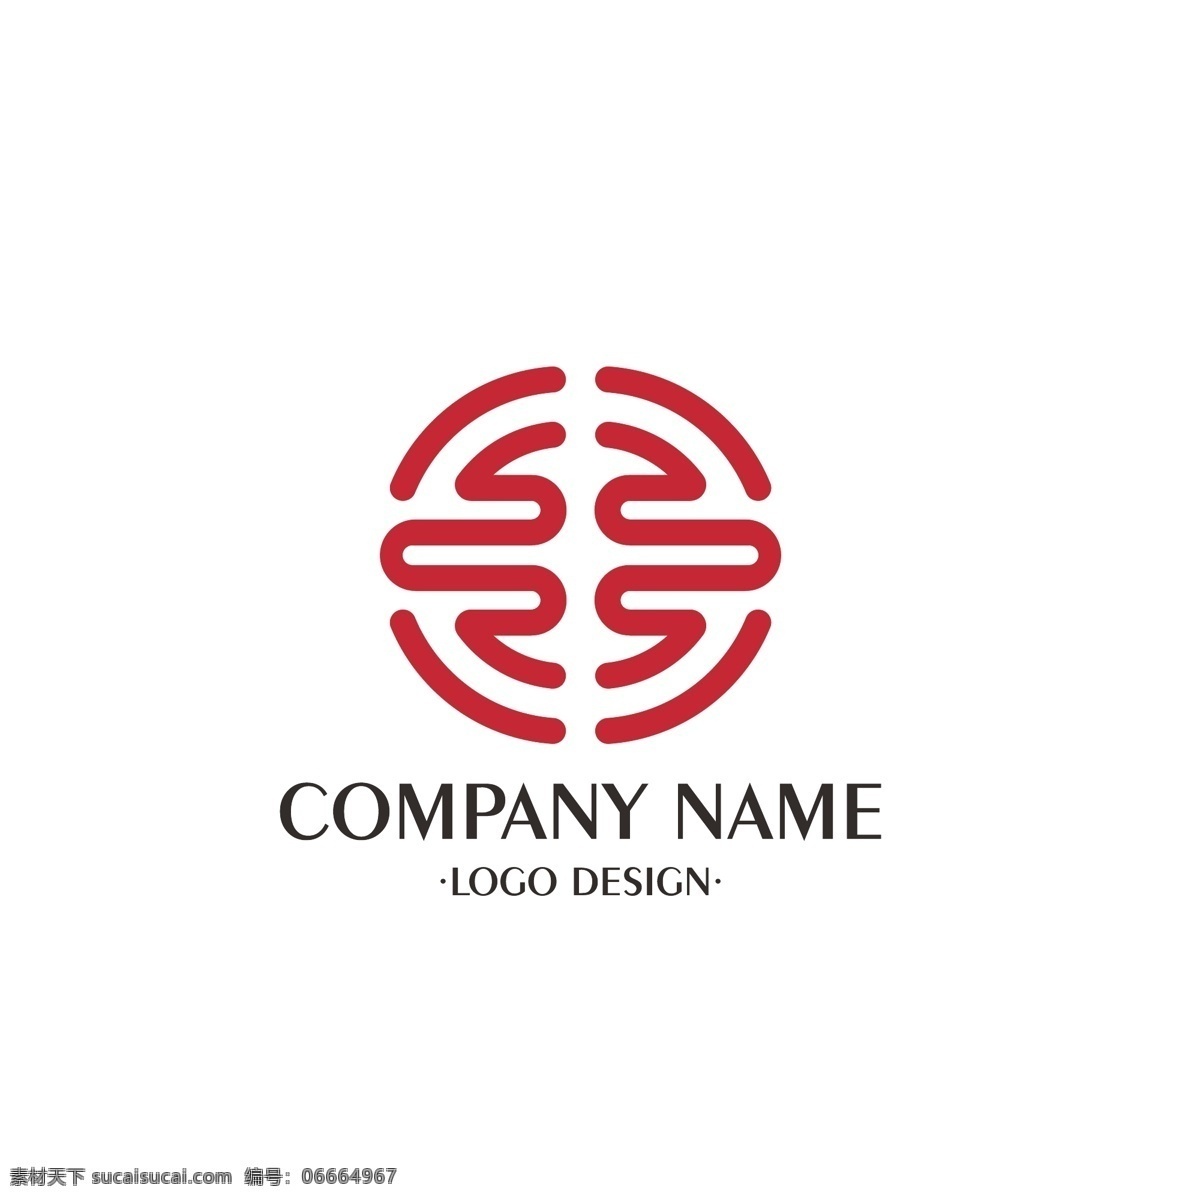 企业 商标 logo 标志 简约 大气 平面 公司